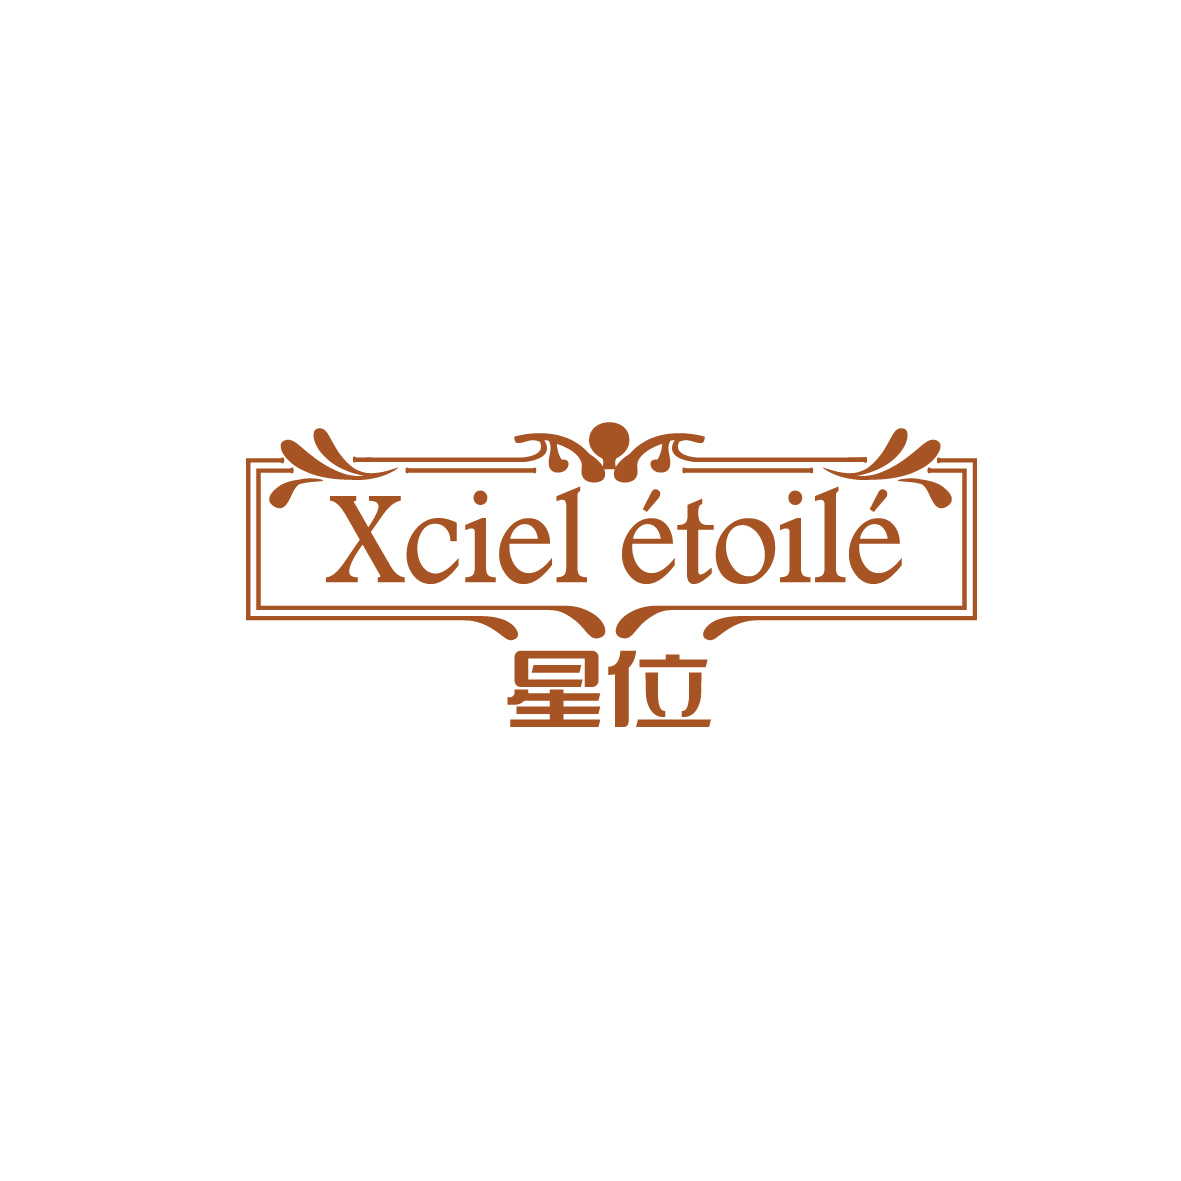 周晓丹商标星位 XCIEL ETOILE（20类）商标买卖平台报价，上哪个平台最省钱？